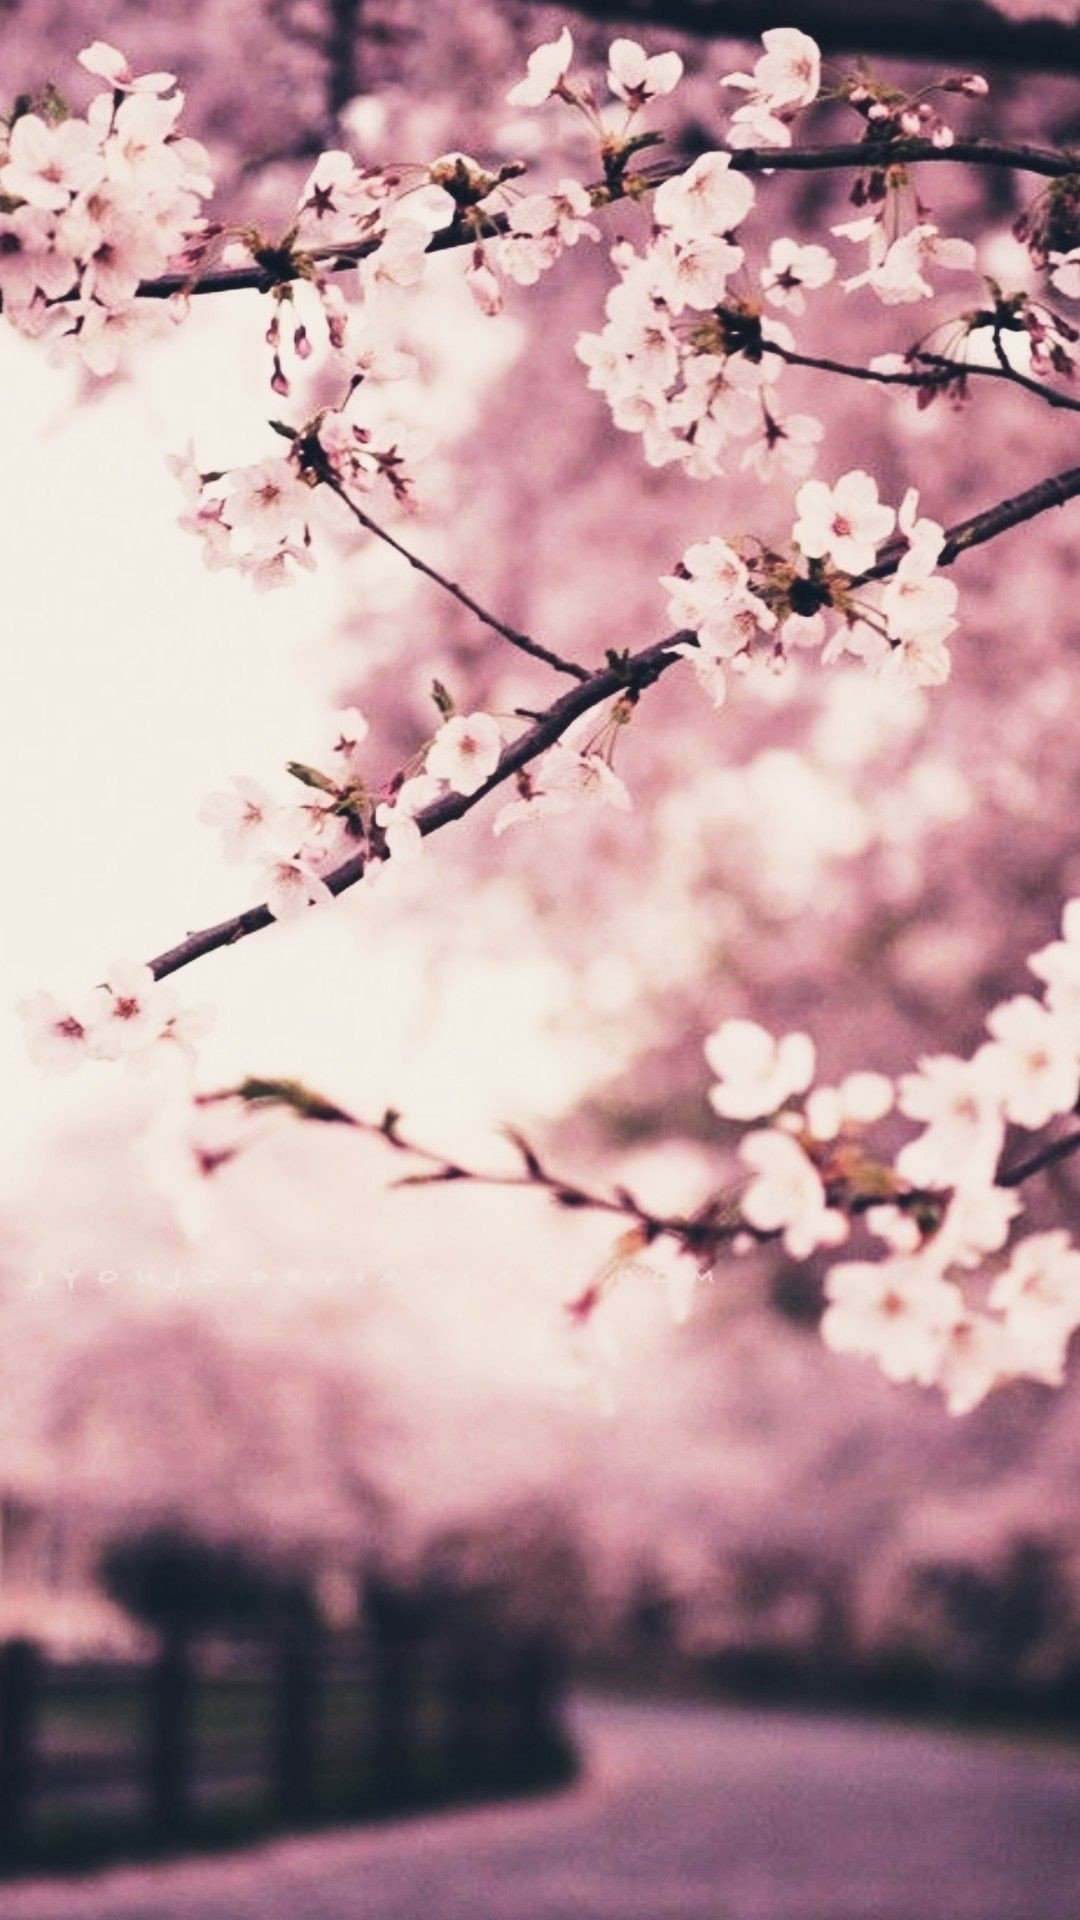 Cherry Blossom screensaver wallpaper